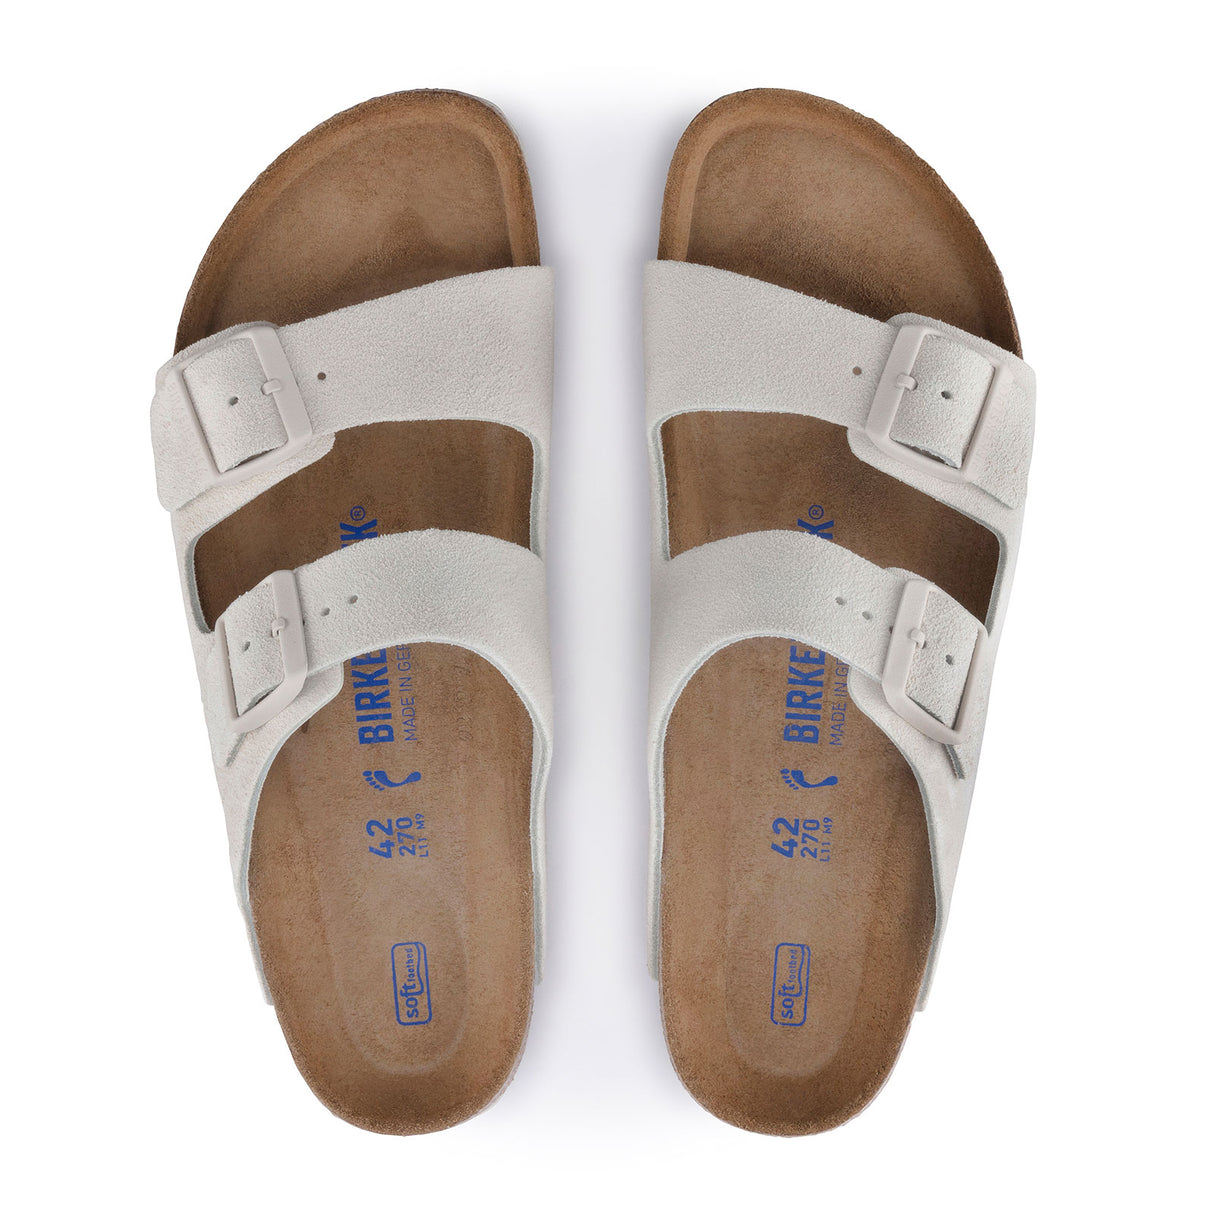 Birkenstock Arizona Soft Footbed Slide Sandal (Unisex) - Antique White Suede Sandals - Slide - The Heel Shoe Fitters